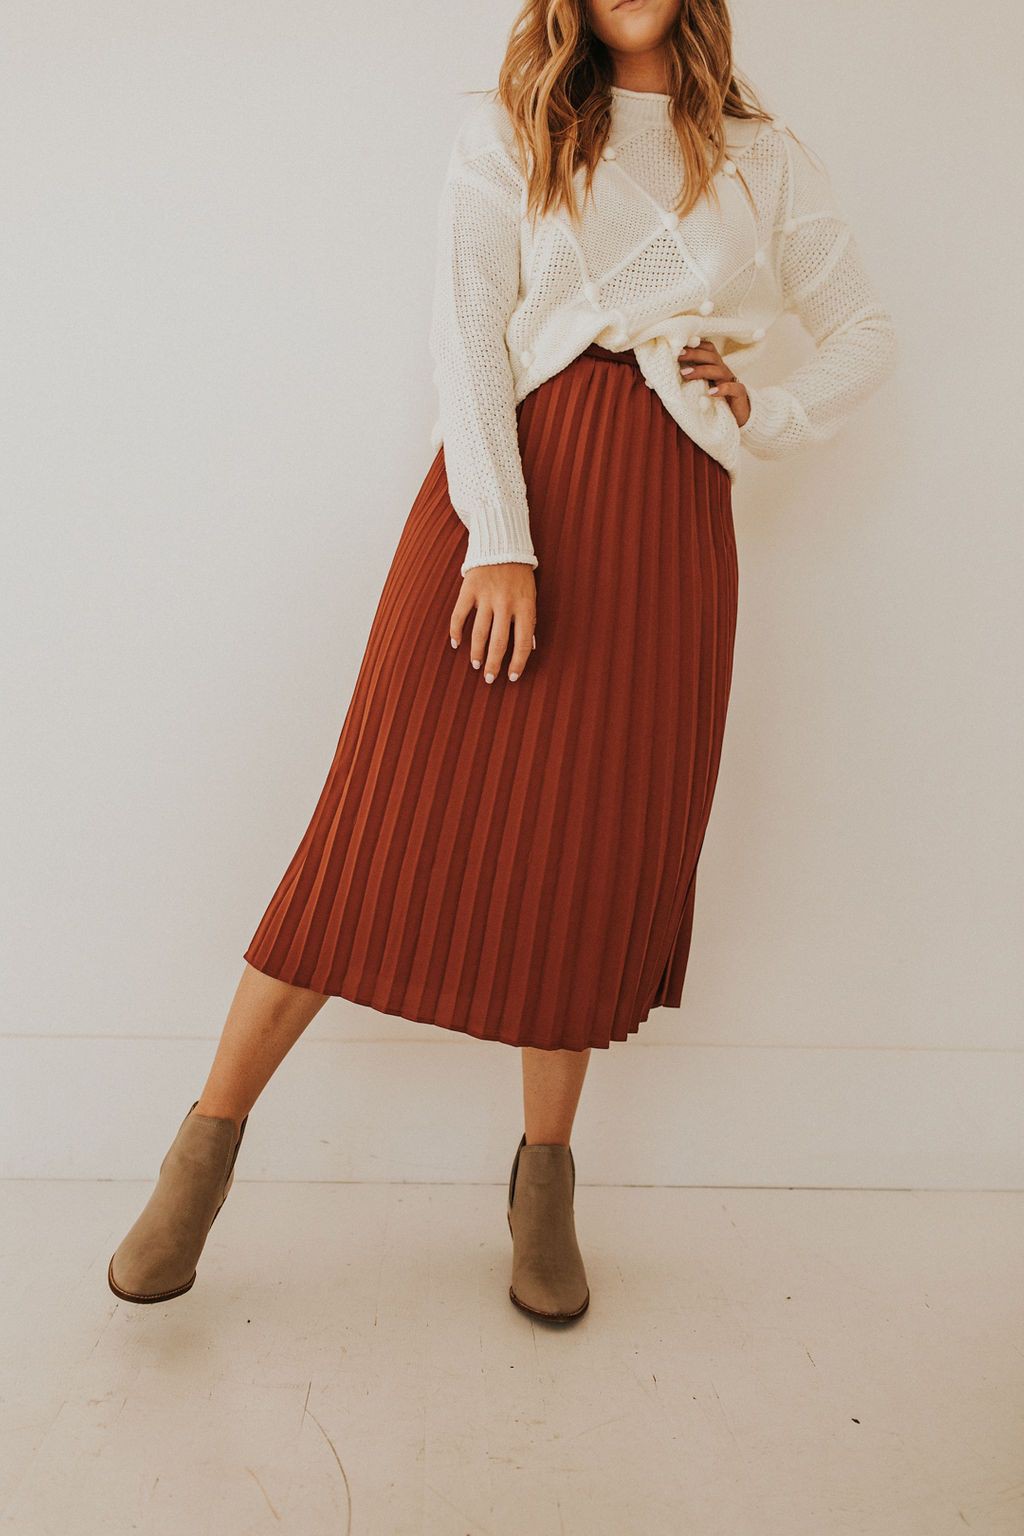 Outfit With Faldas plisadas, Moda modesta y Falda de mezclilla: Trajes De Falda,  Semana de la Moda,  Atuendos Informales,  Falda plisada  